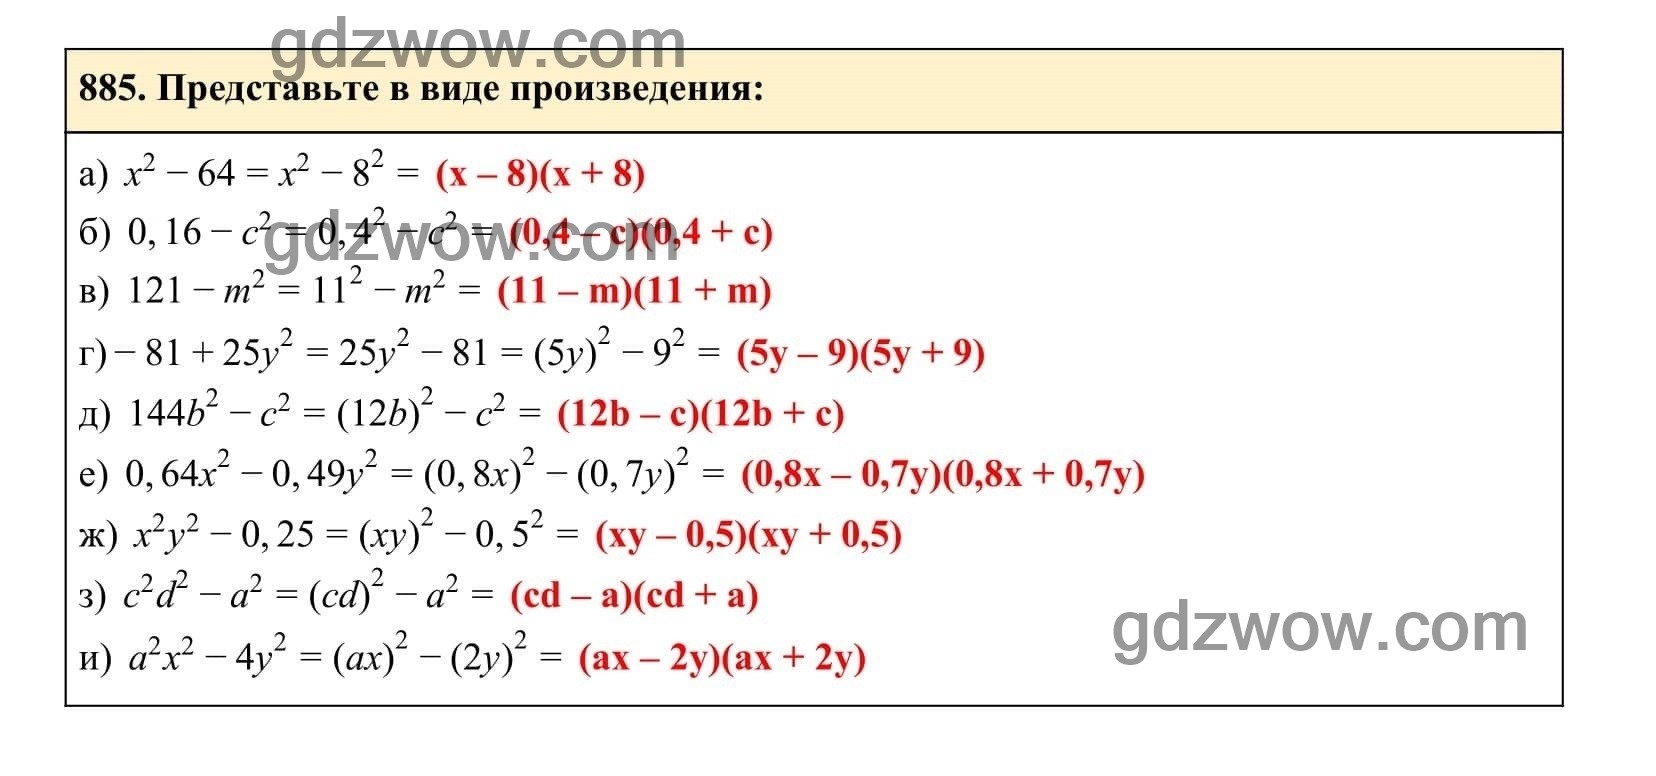 Упражнение 885 - ГДЗ по Алгебре 7 класс Учебник Макарычев (решебник) - GDZwow